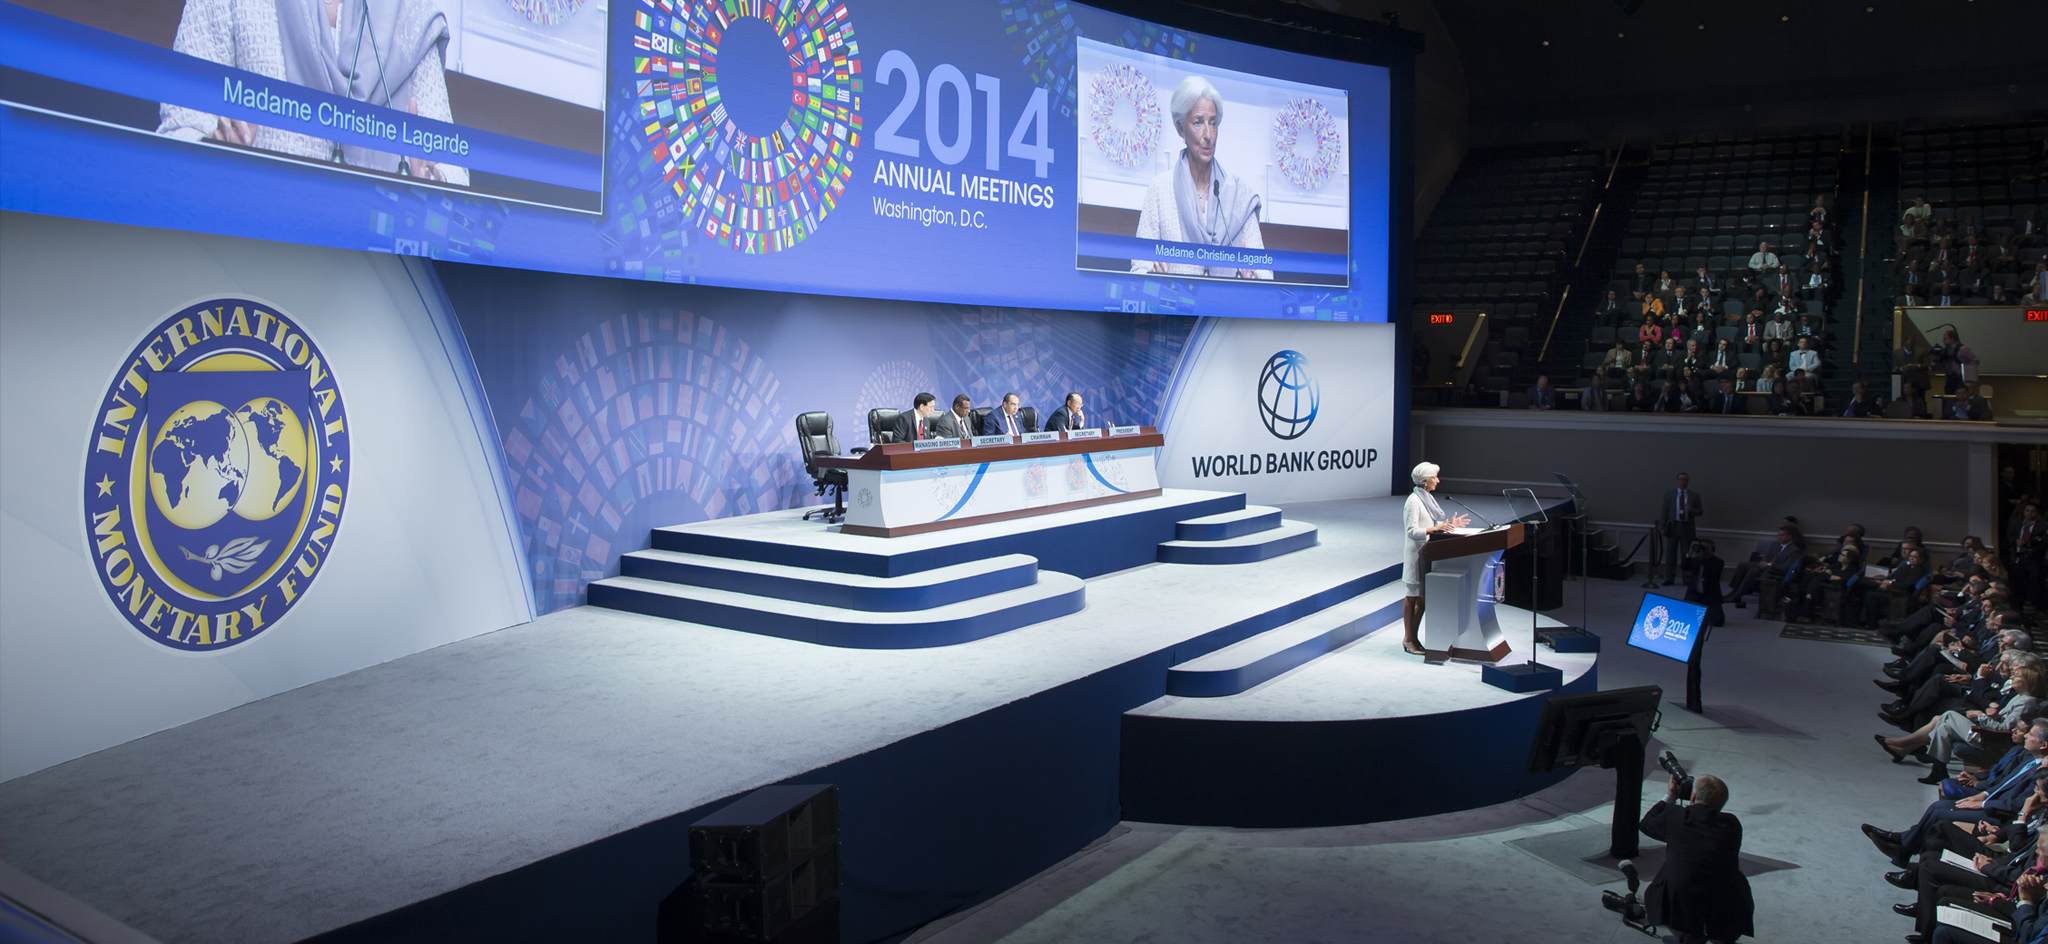 Le FMI a 70 ans : les décisions justes, hier, aujourd'hui et demain